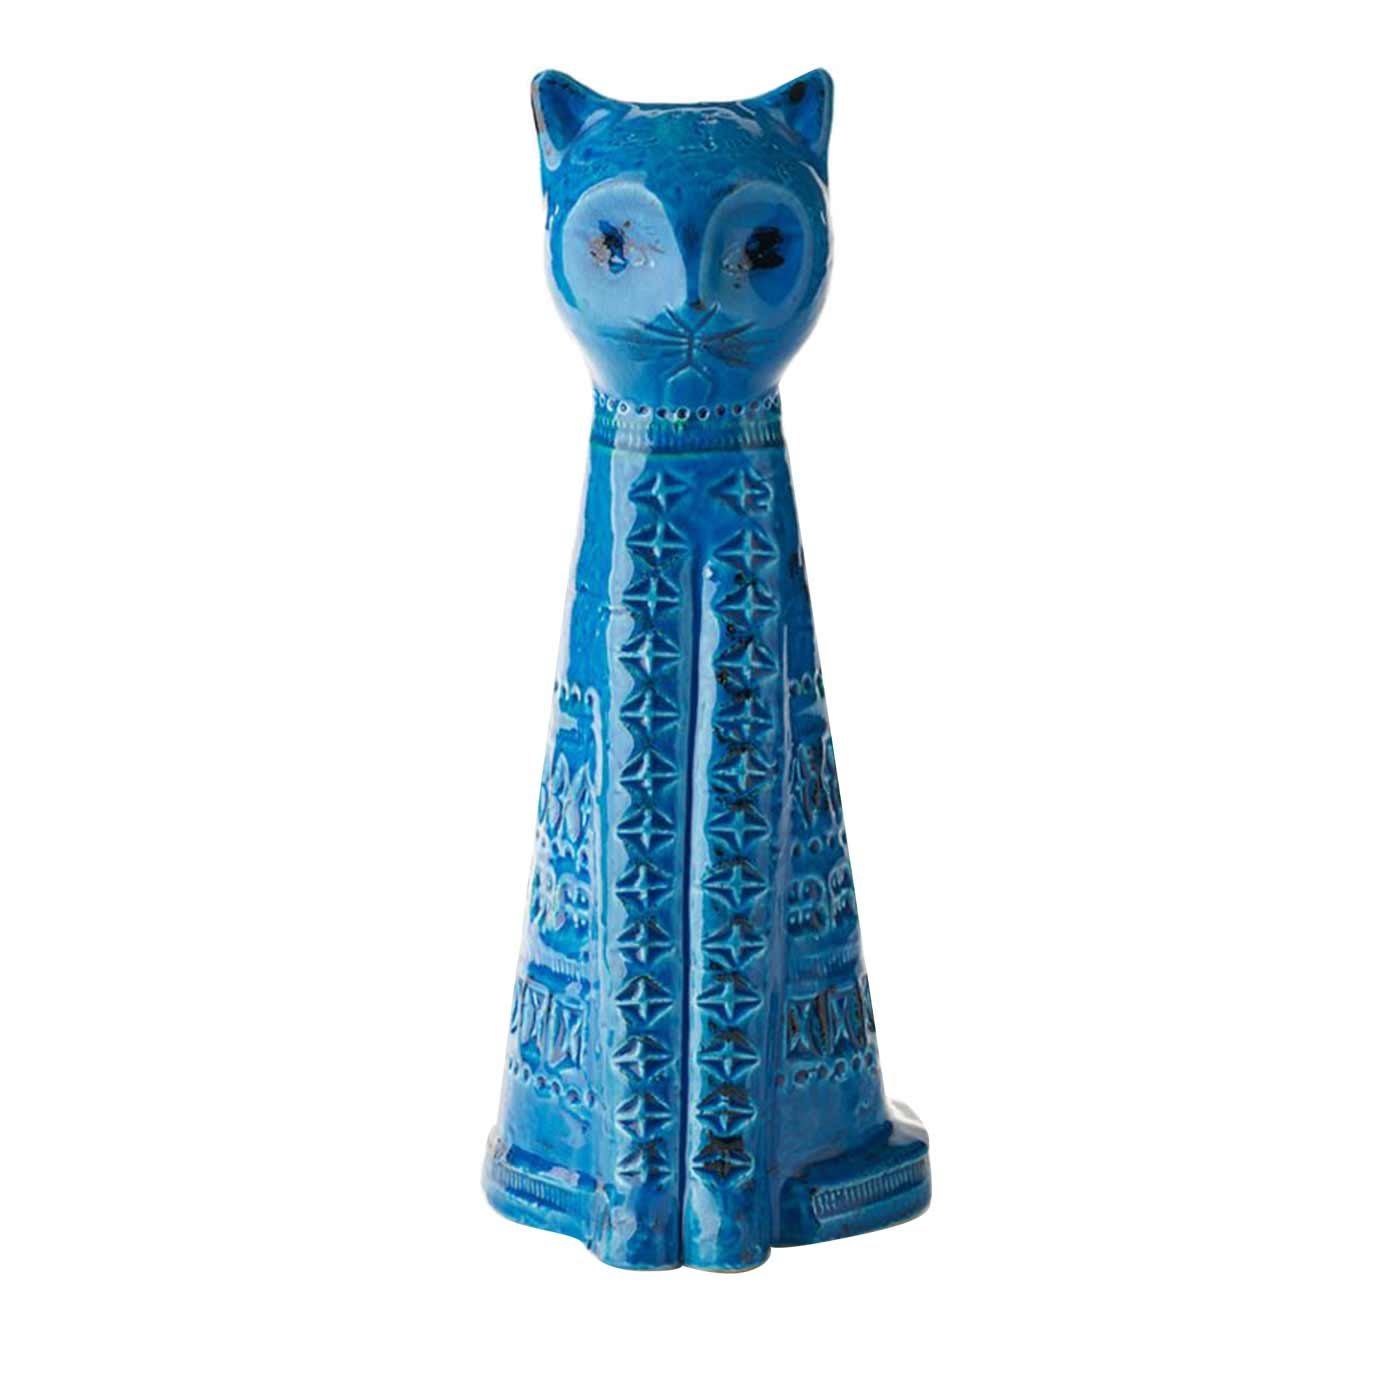 Rimini Blu Sitting Cat Figurine by Aldo Londi - Bitossi Ceramiche